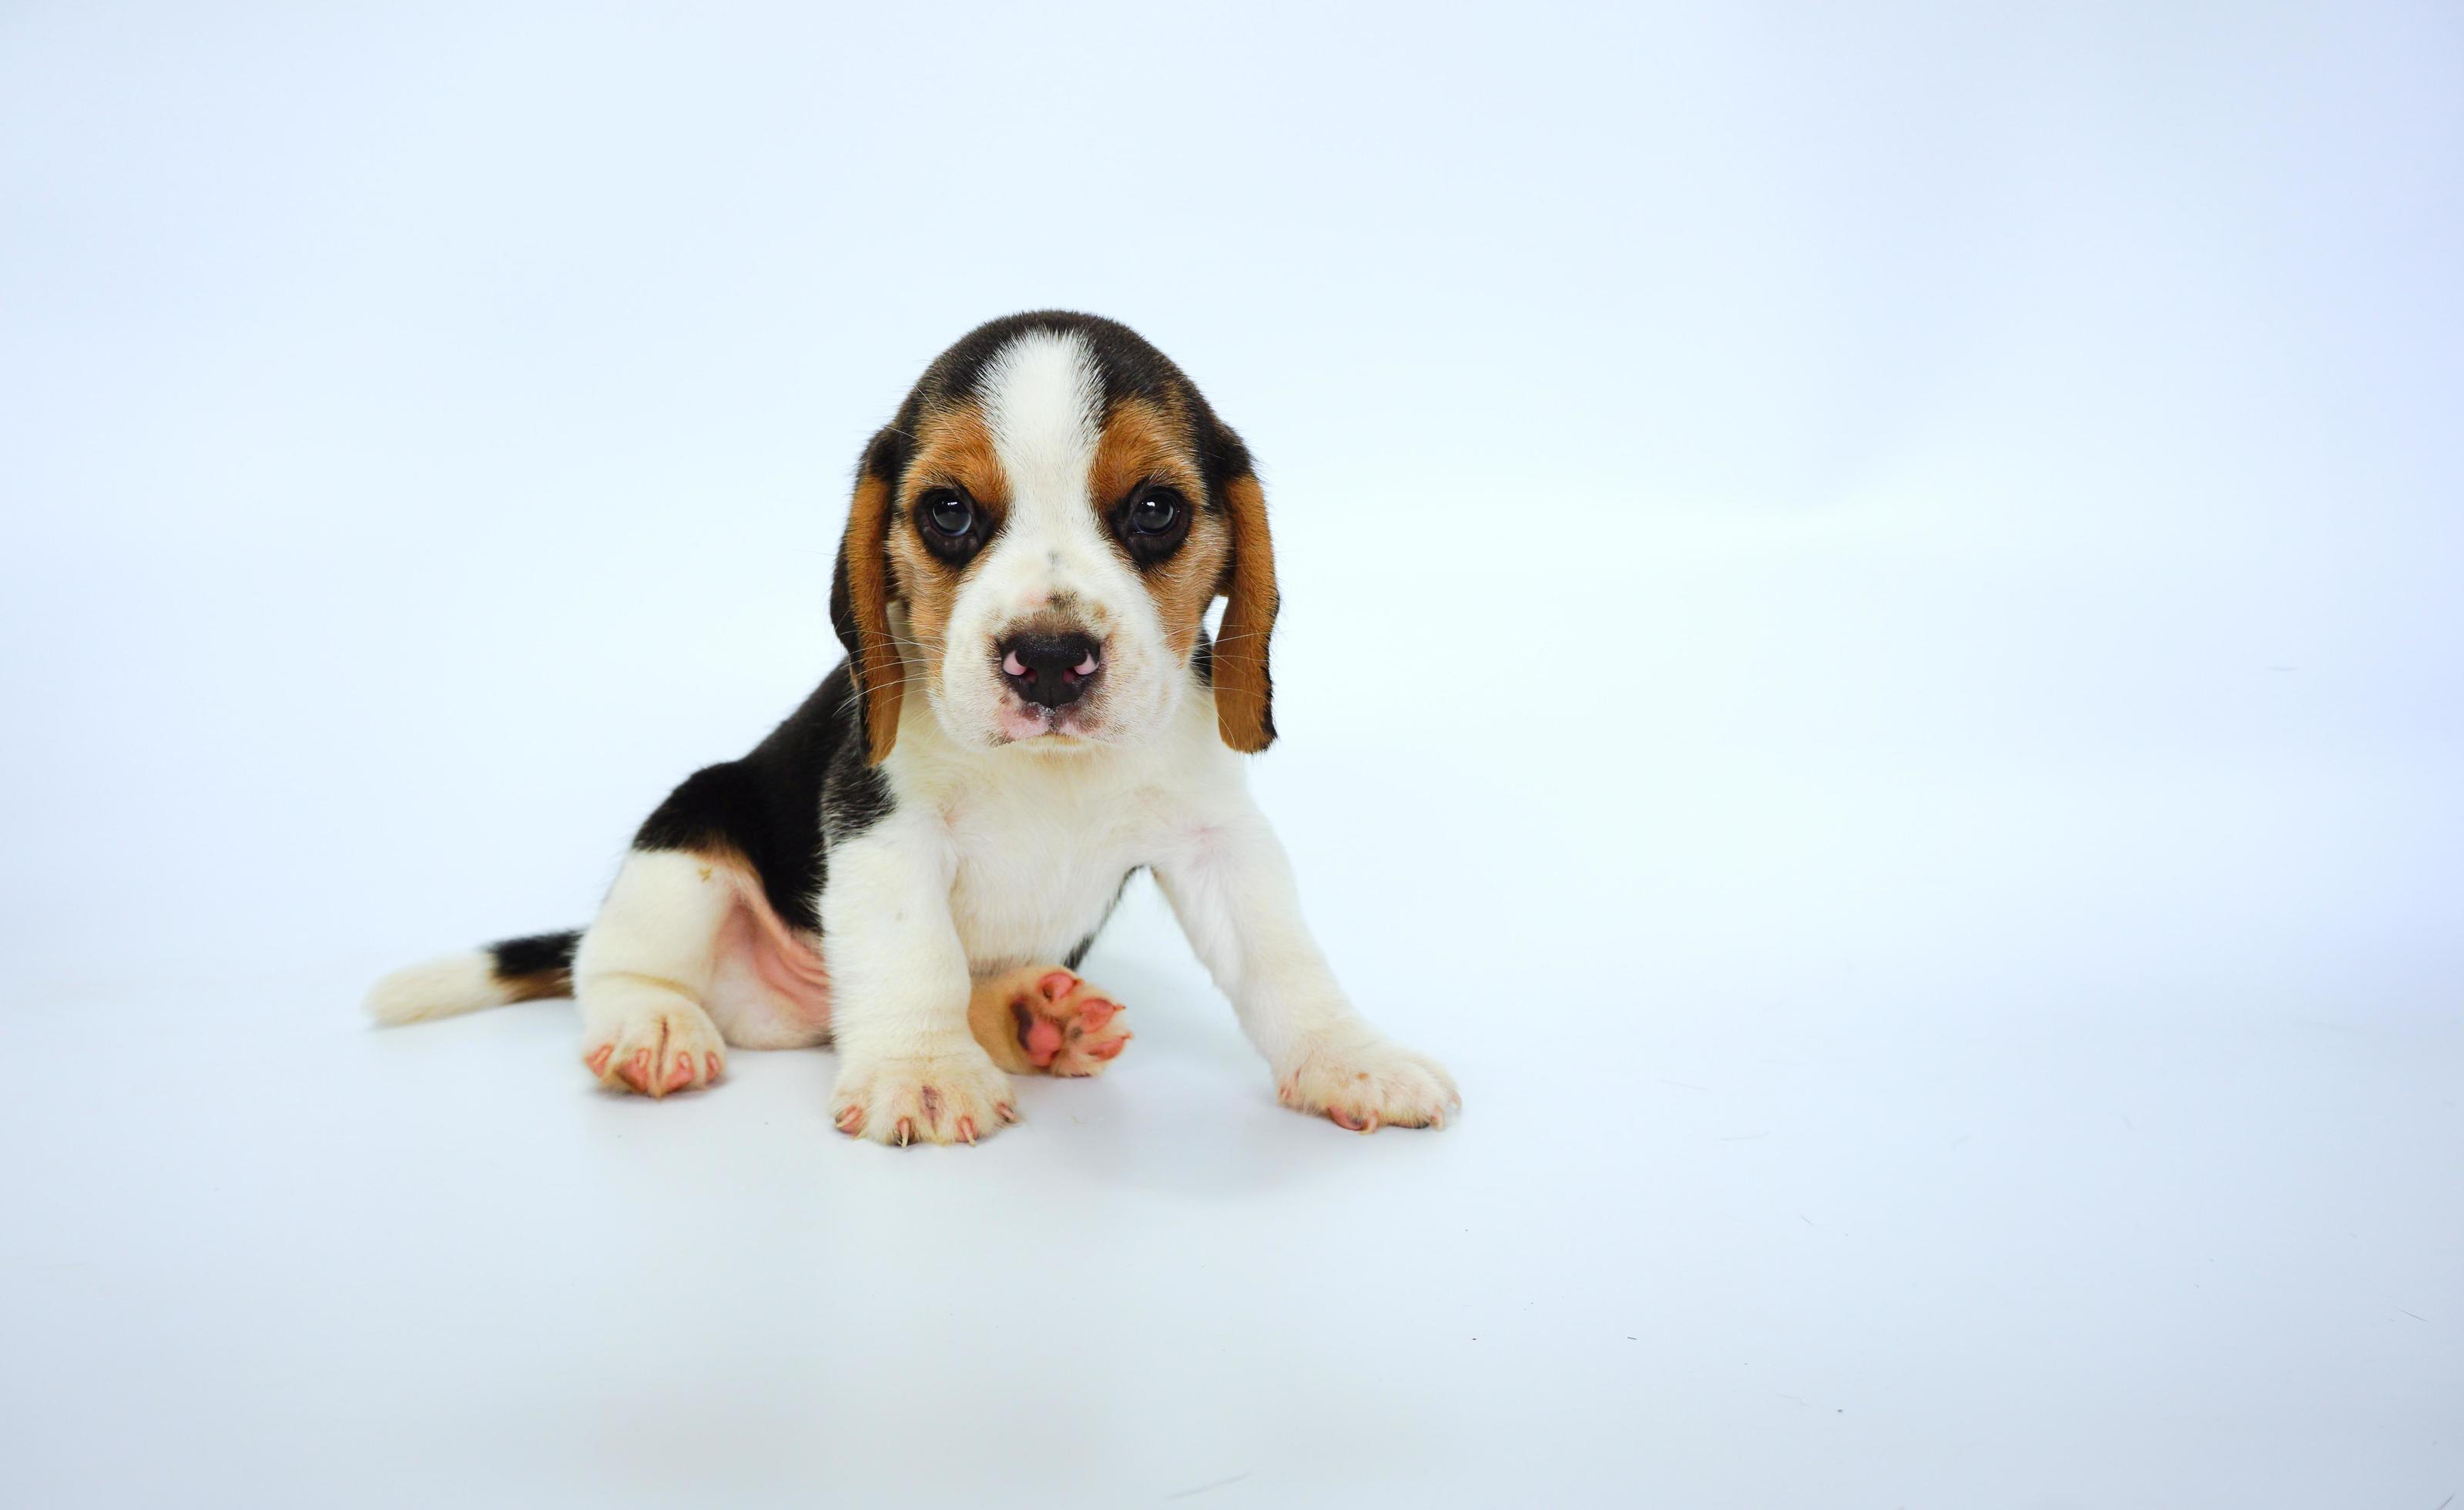 bedårande tricolor beagle på vit skärm. beaglar används i en rad forskningsprocedurer. det allmänna utseendet på beagle liknar en miniatyr rävhund. beaglar har utmärkta näsor. foto